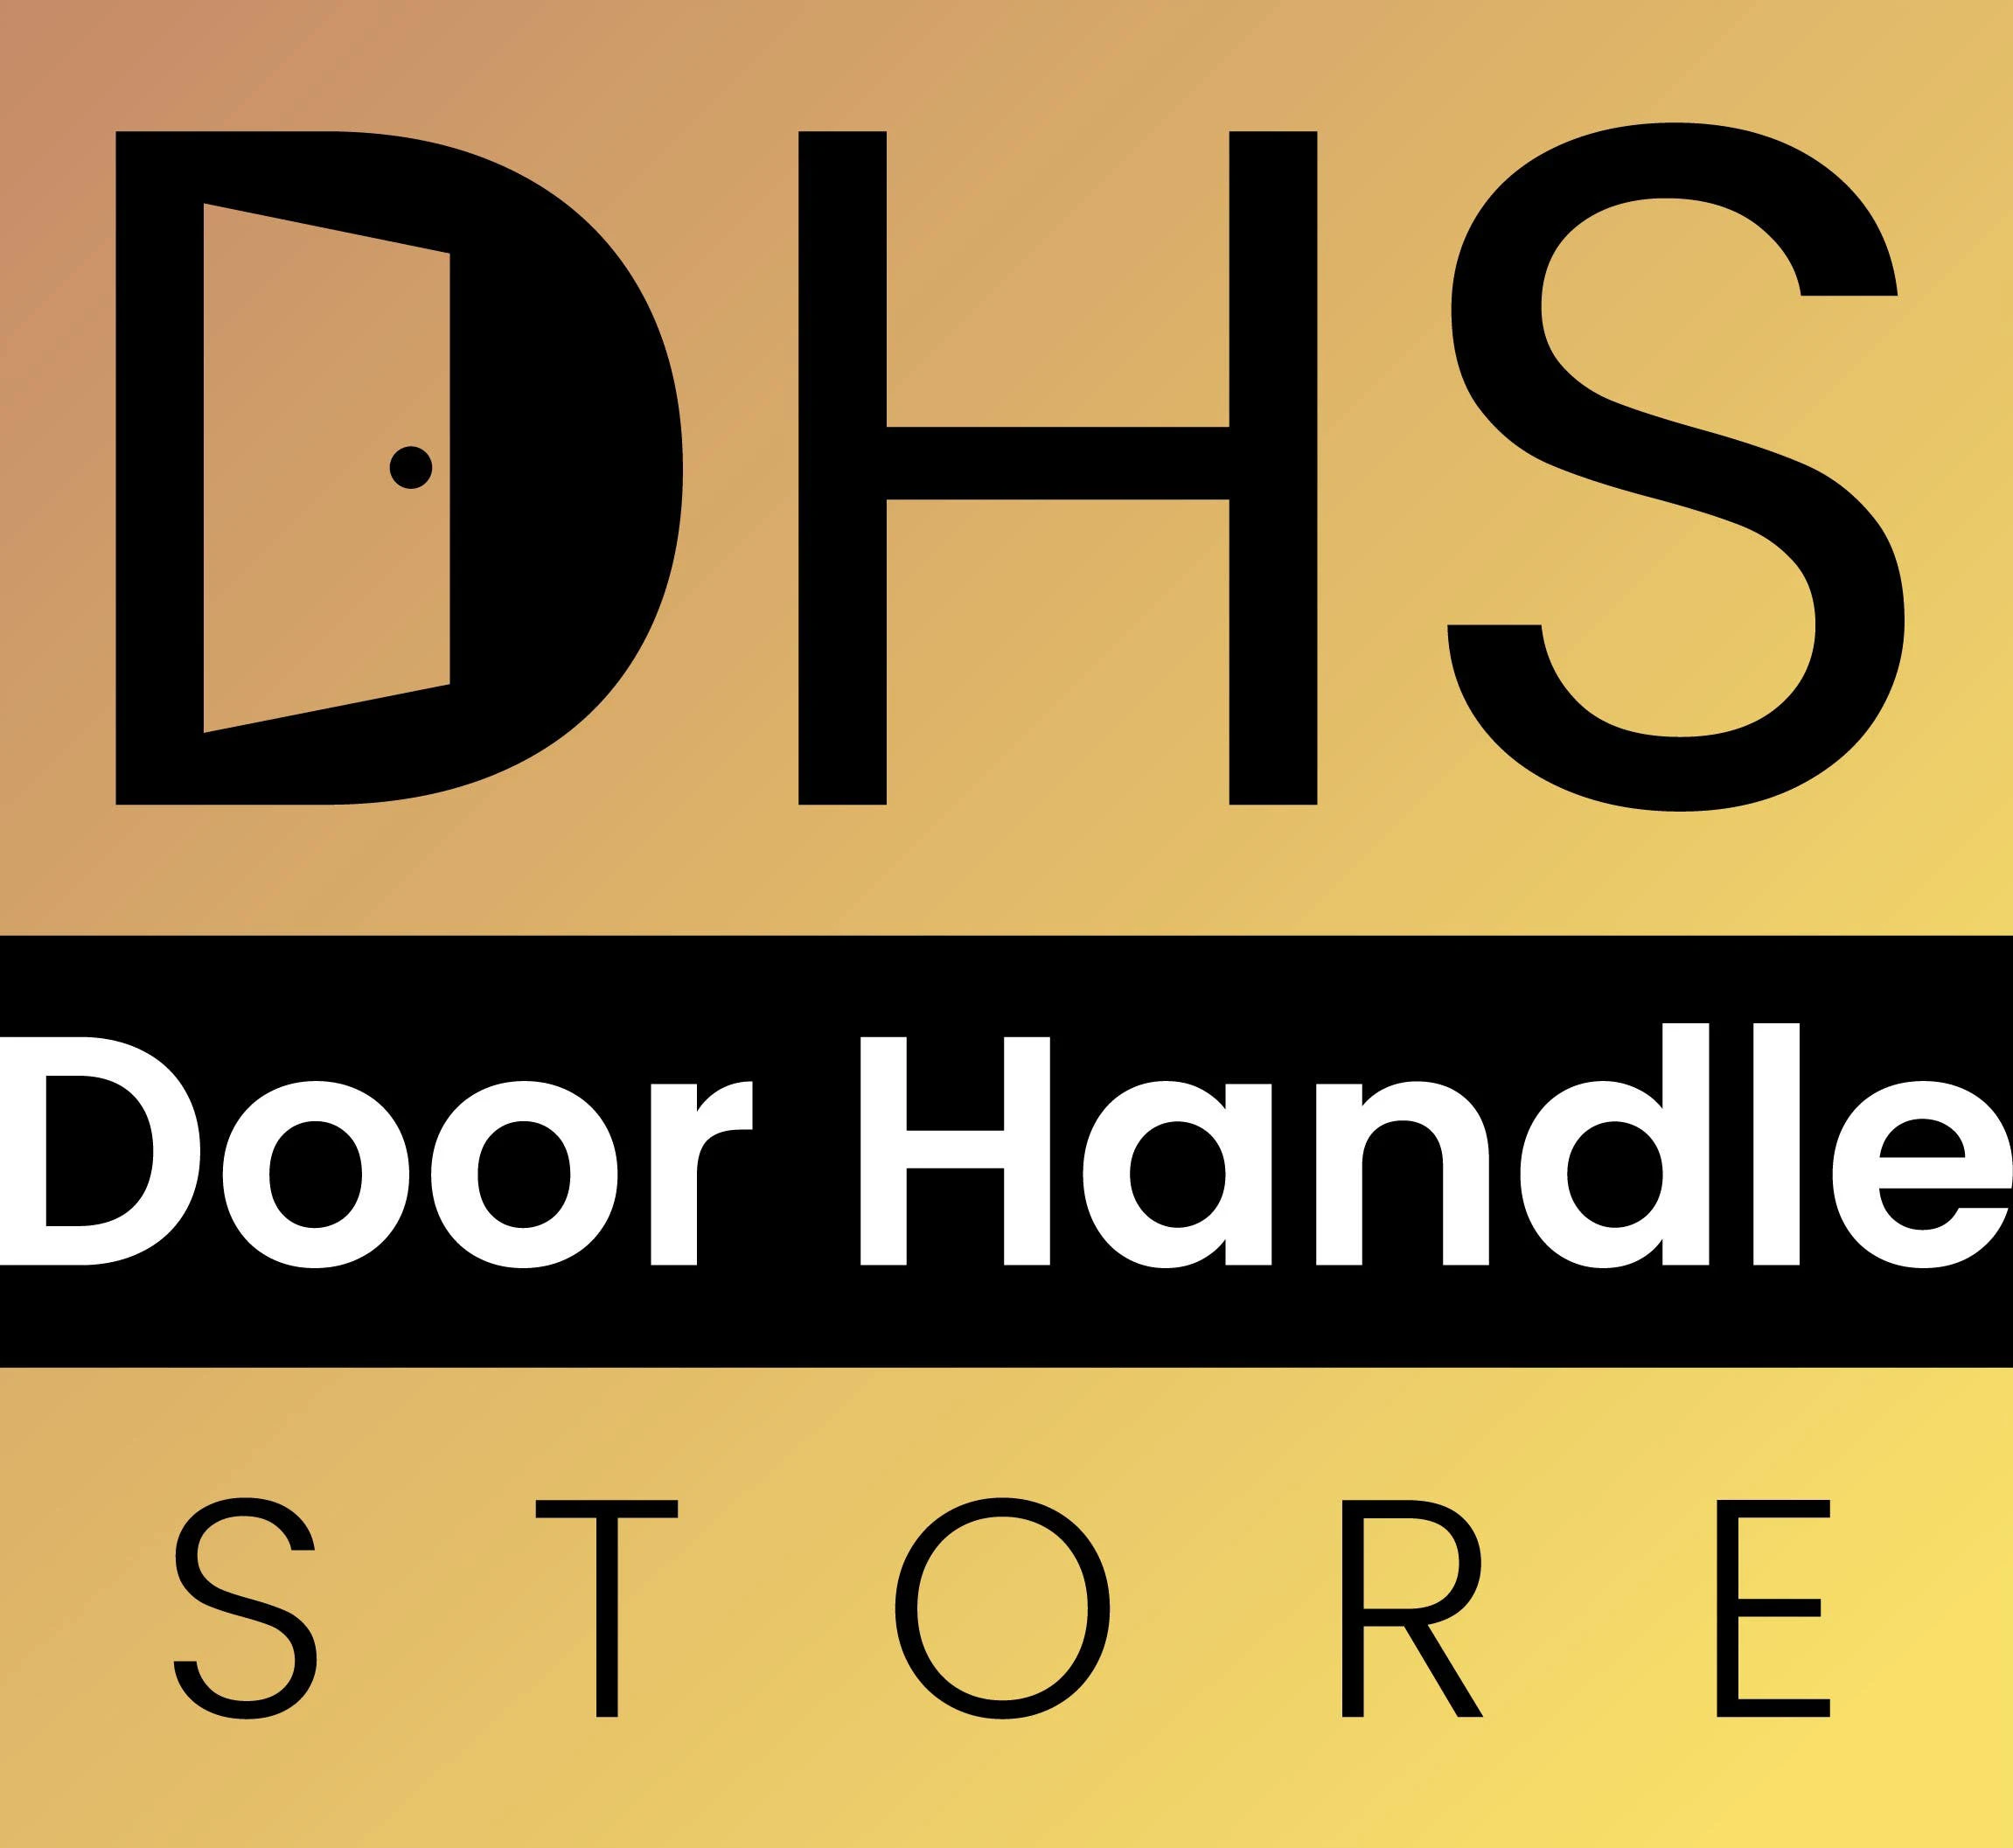  Door Handle Store Kortingscode